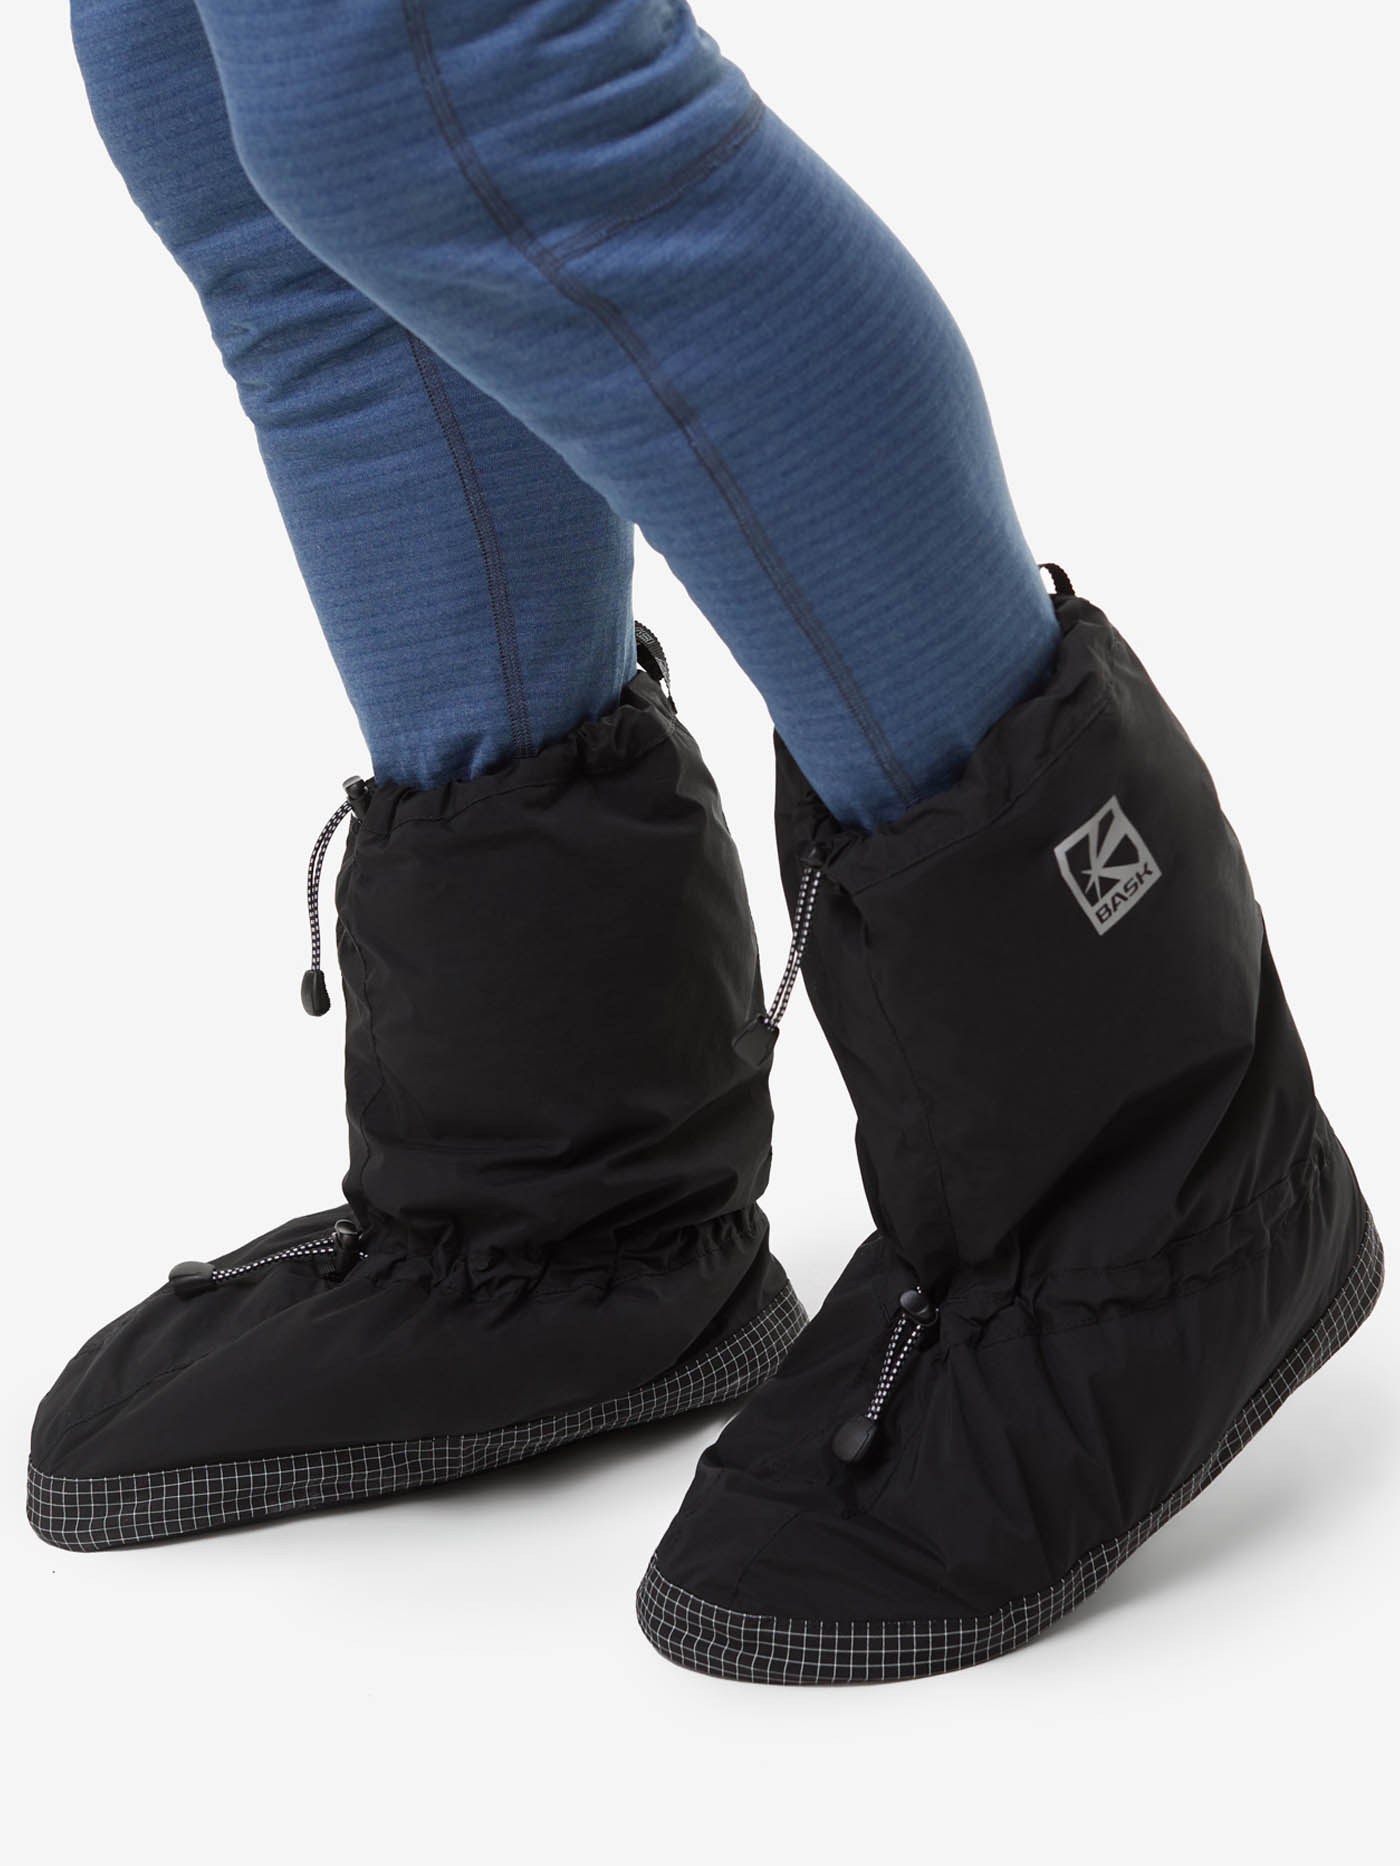 Носки BASK, размер S, цвет черный 21203-9009-S Tundra foot - фото 5